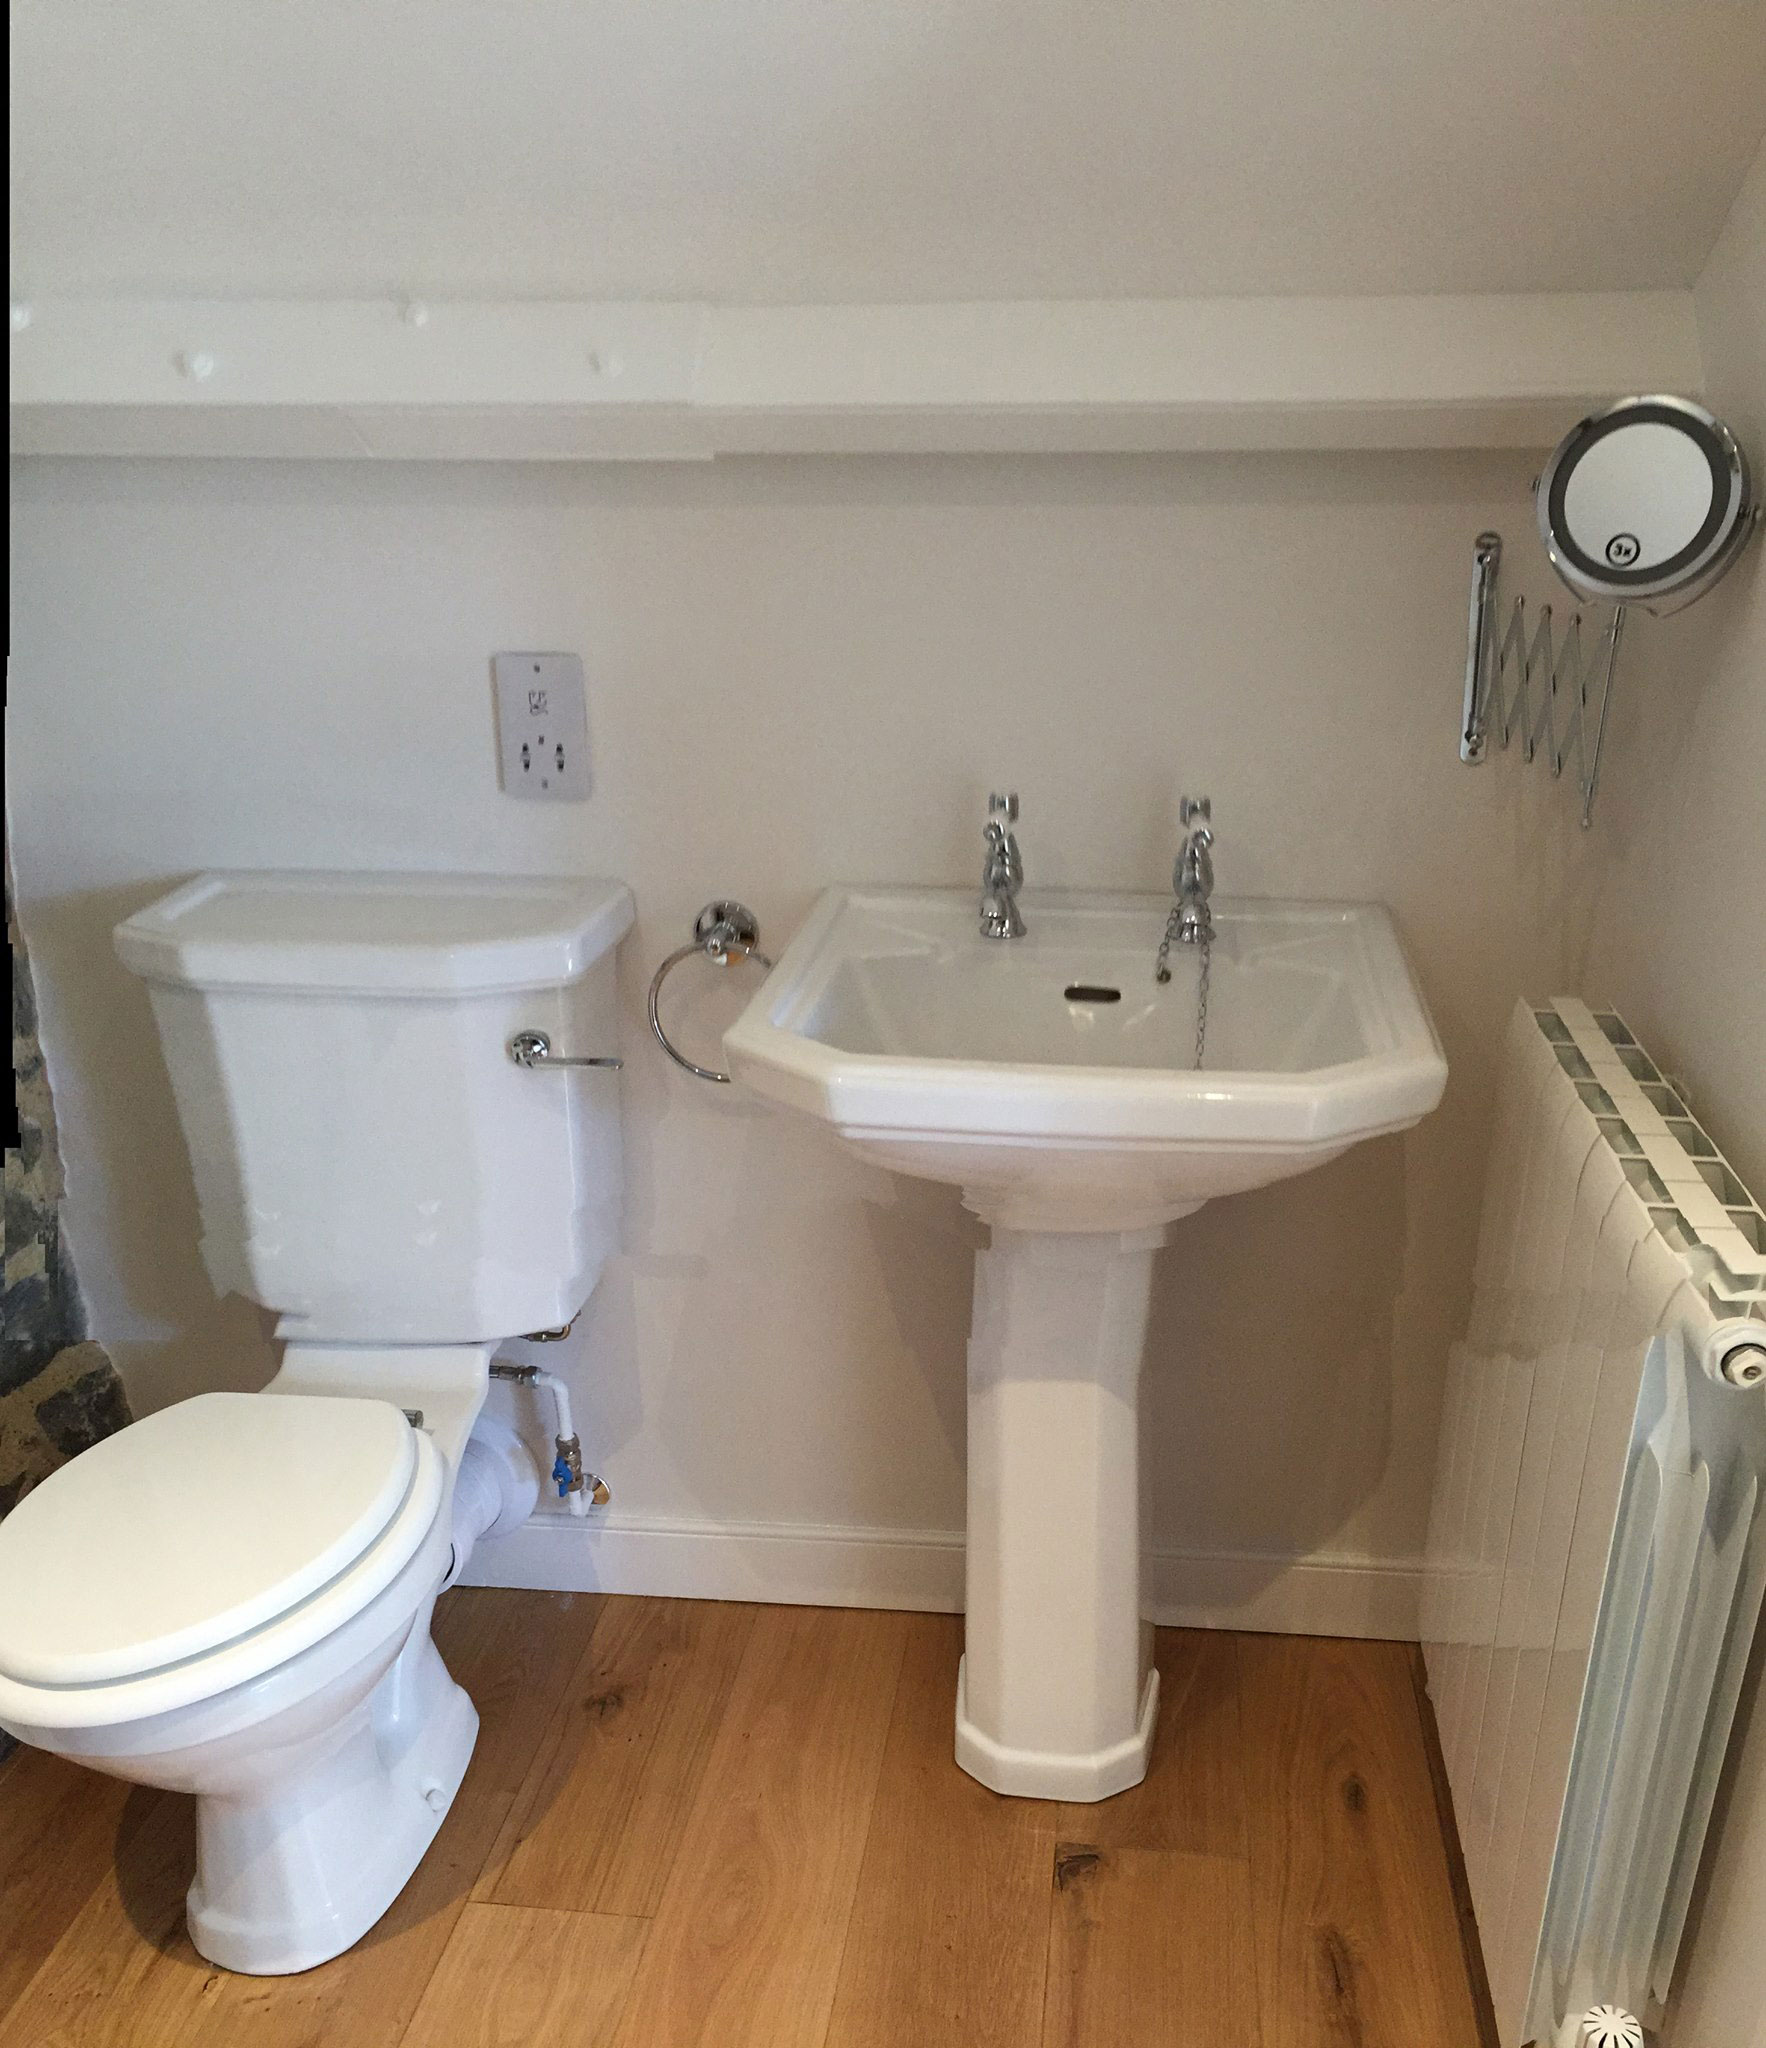 Style Plumbing & Heating bathroom suite installed